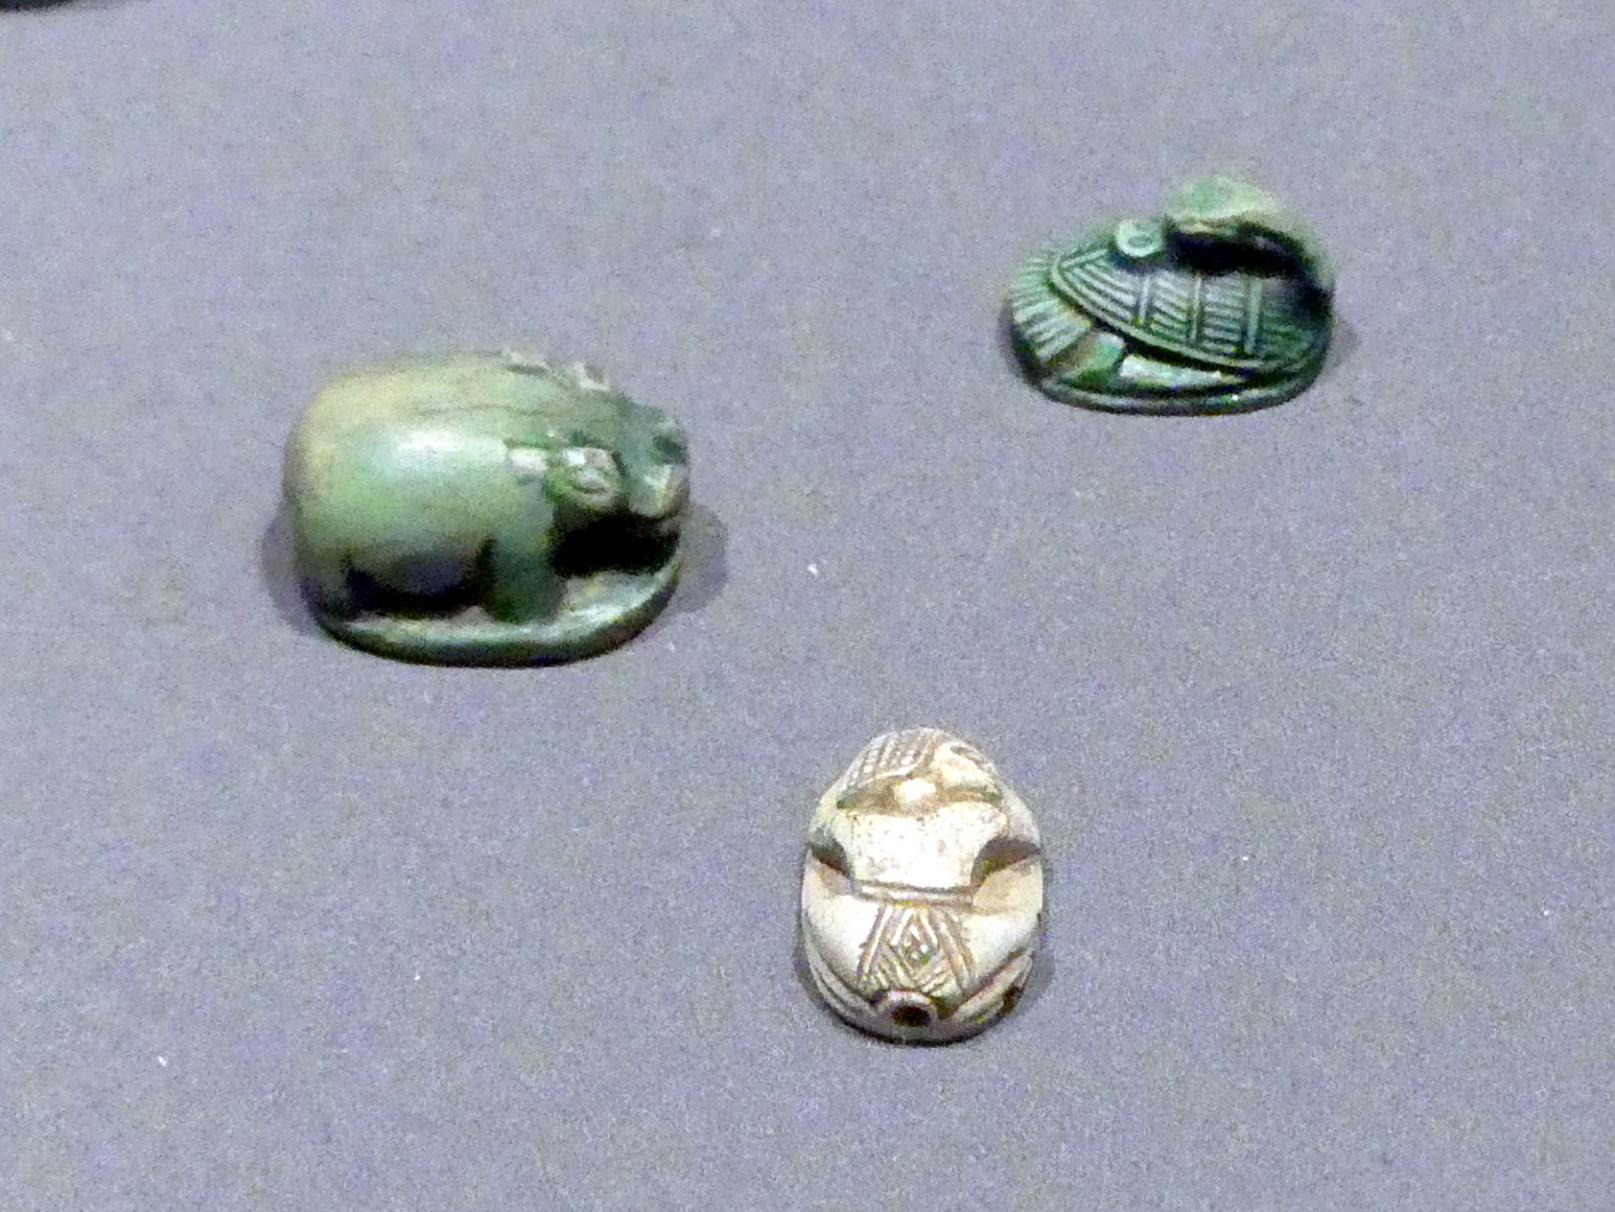 Skaraboiden als Nilpferd, Ente, Mensch, 18. Dynastie, Undatiert, 1400 - 1350 v. Chr., Bild 1/2